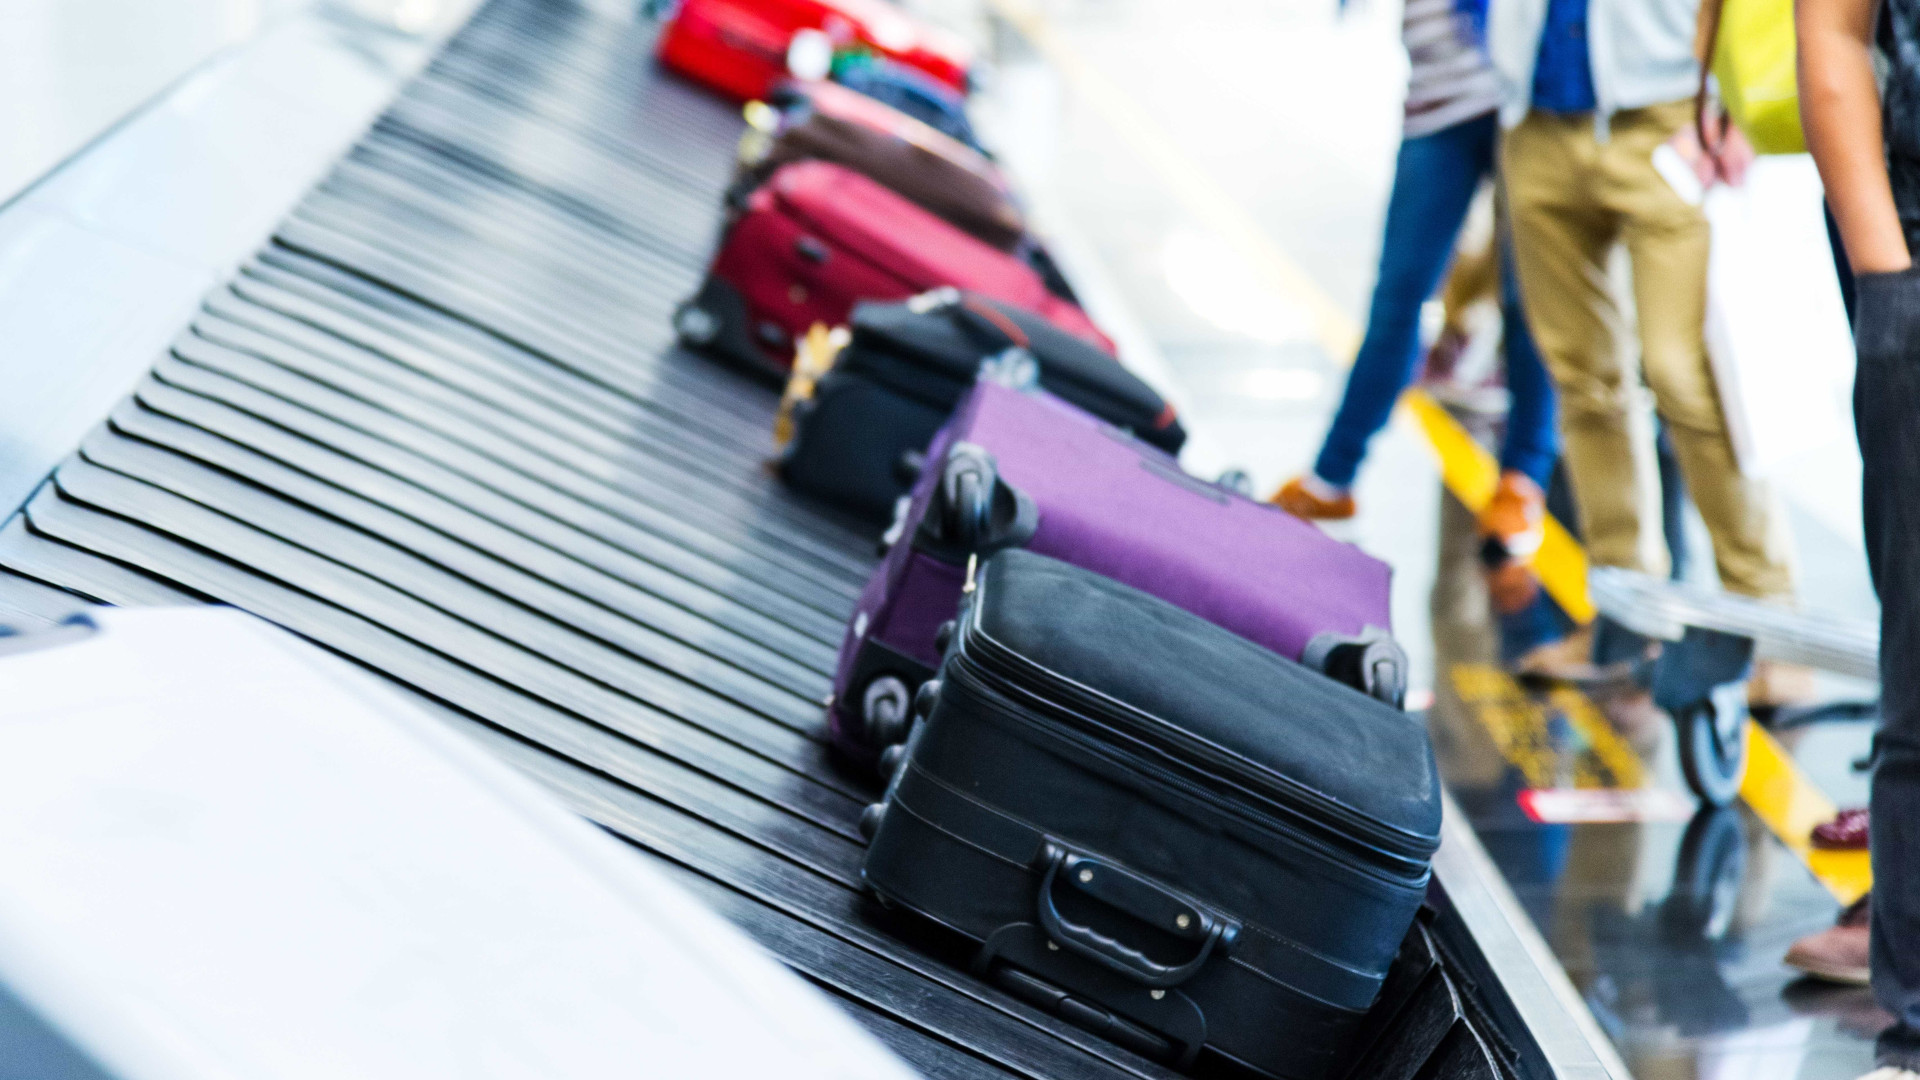 Viajantes devem declarar bens comprados
no exterior; veja regras